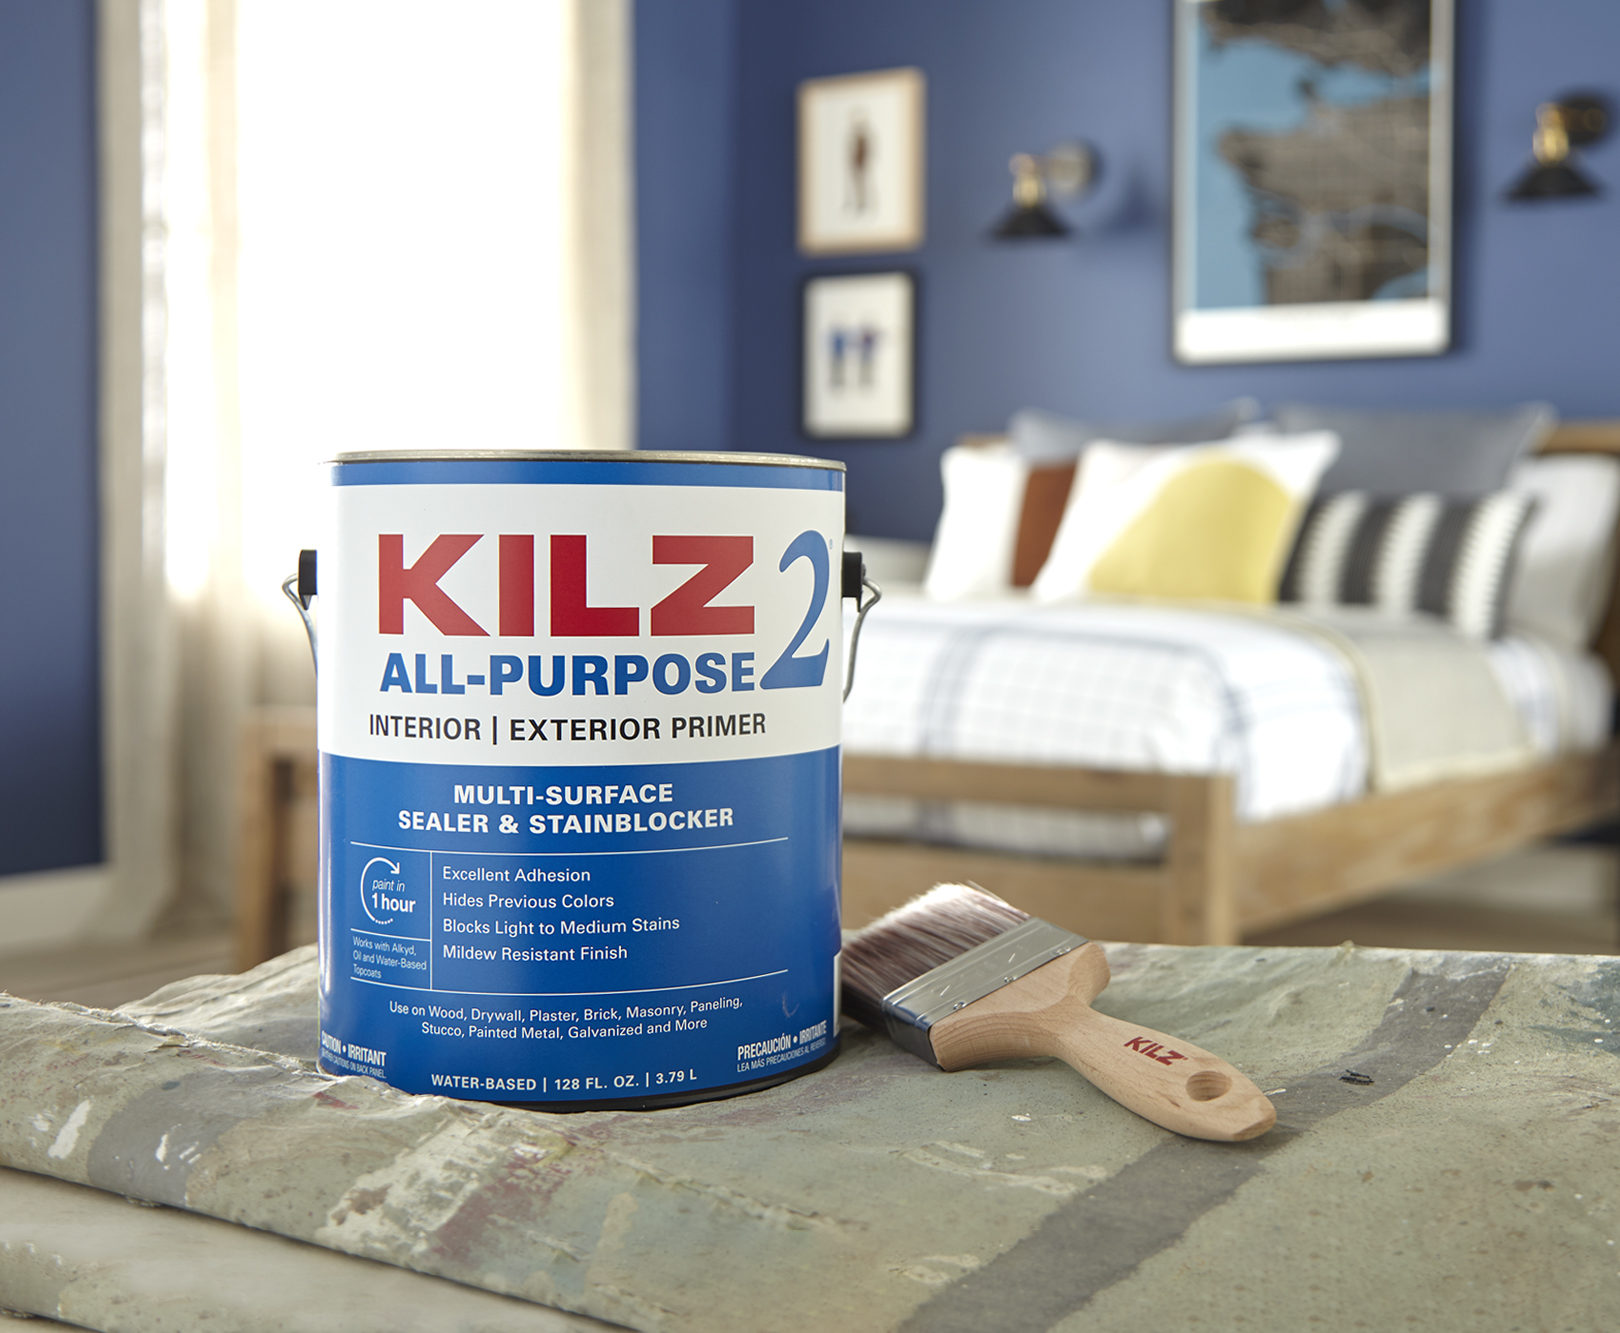 KILZ 2 All-Purpose Interior & Exterior Primer 1 gallon can in a bedroom scene